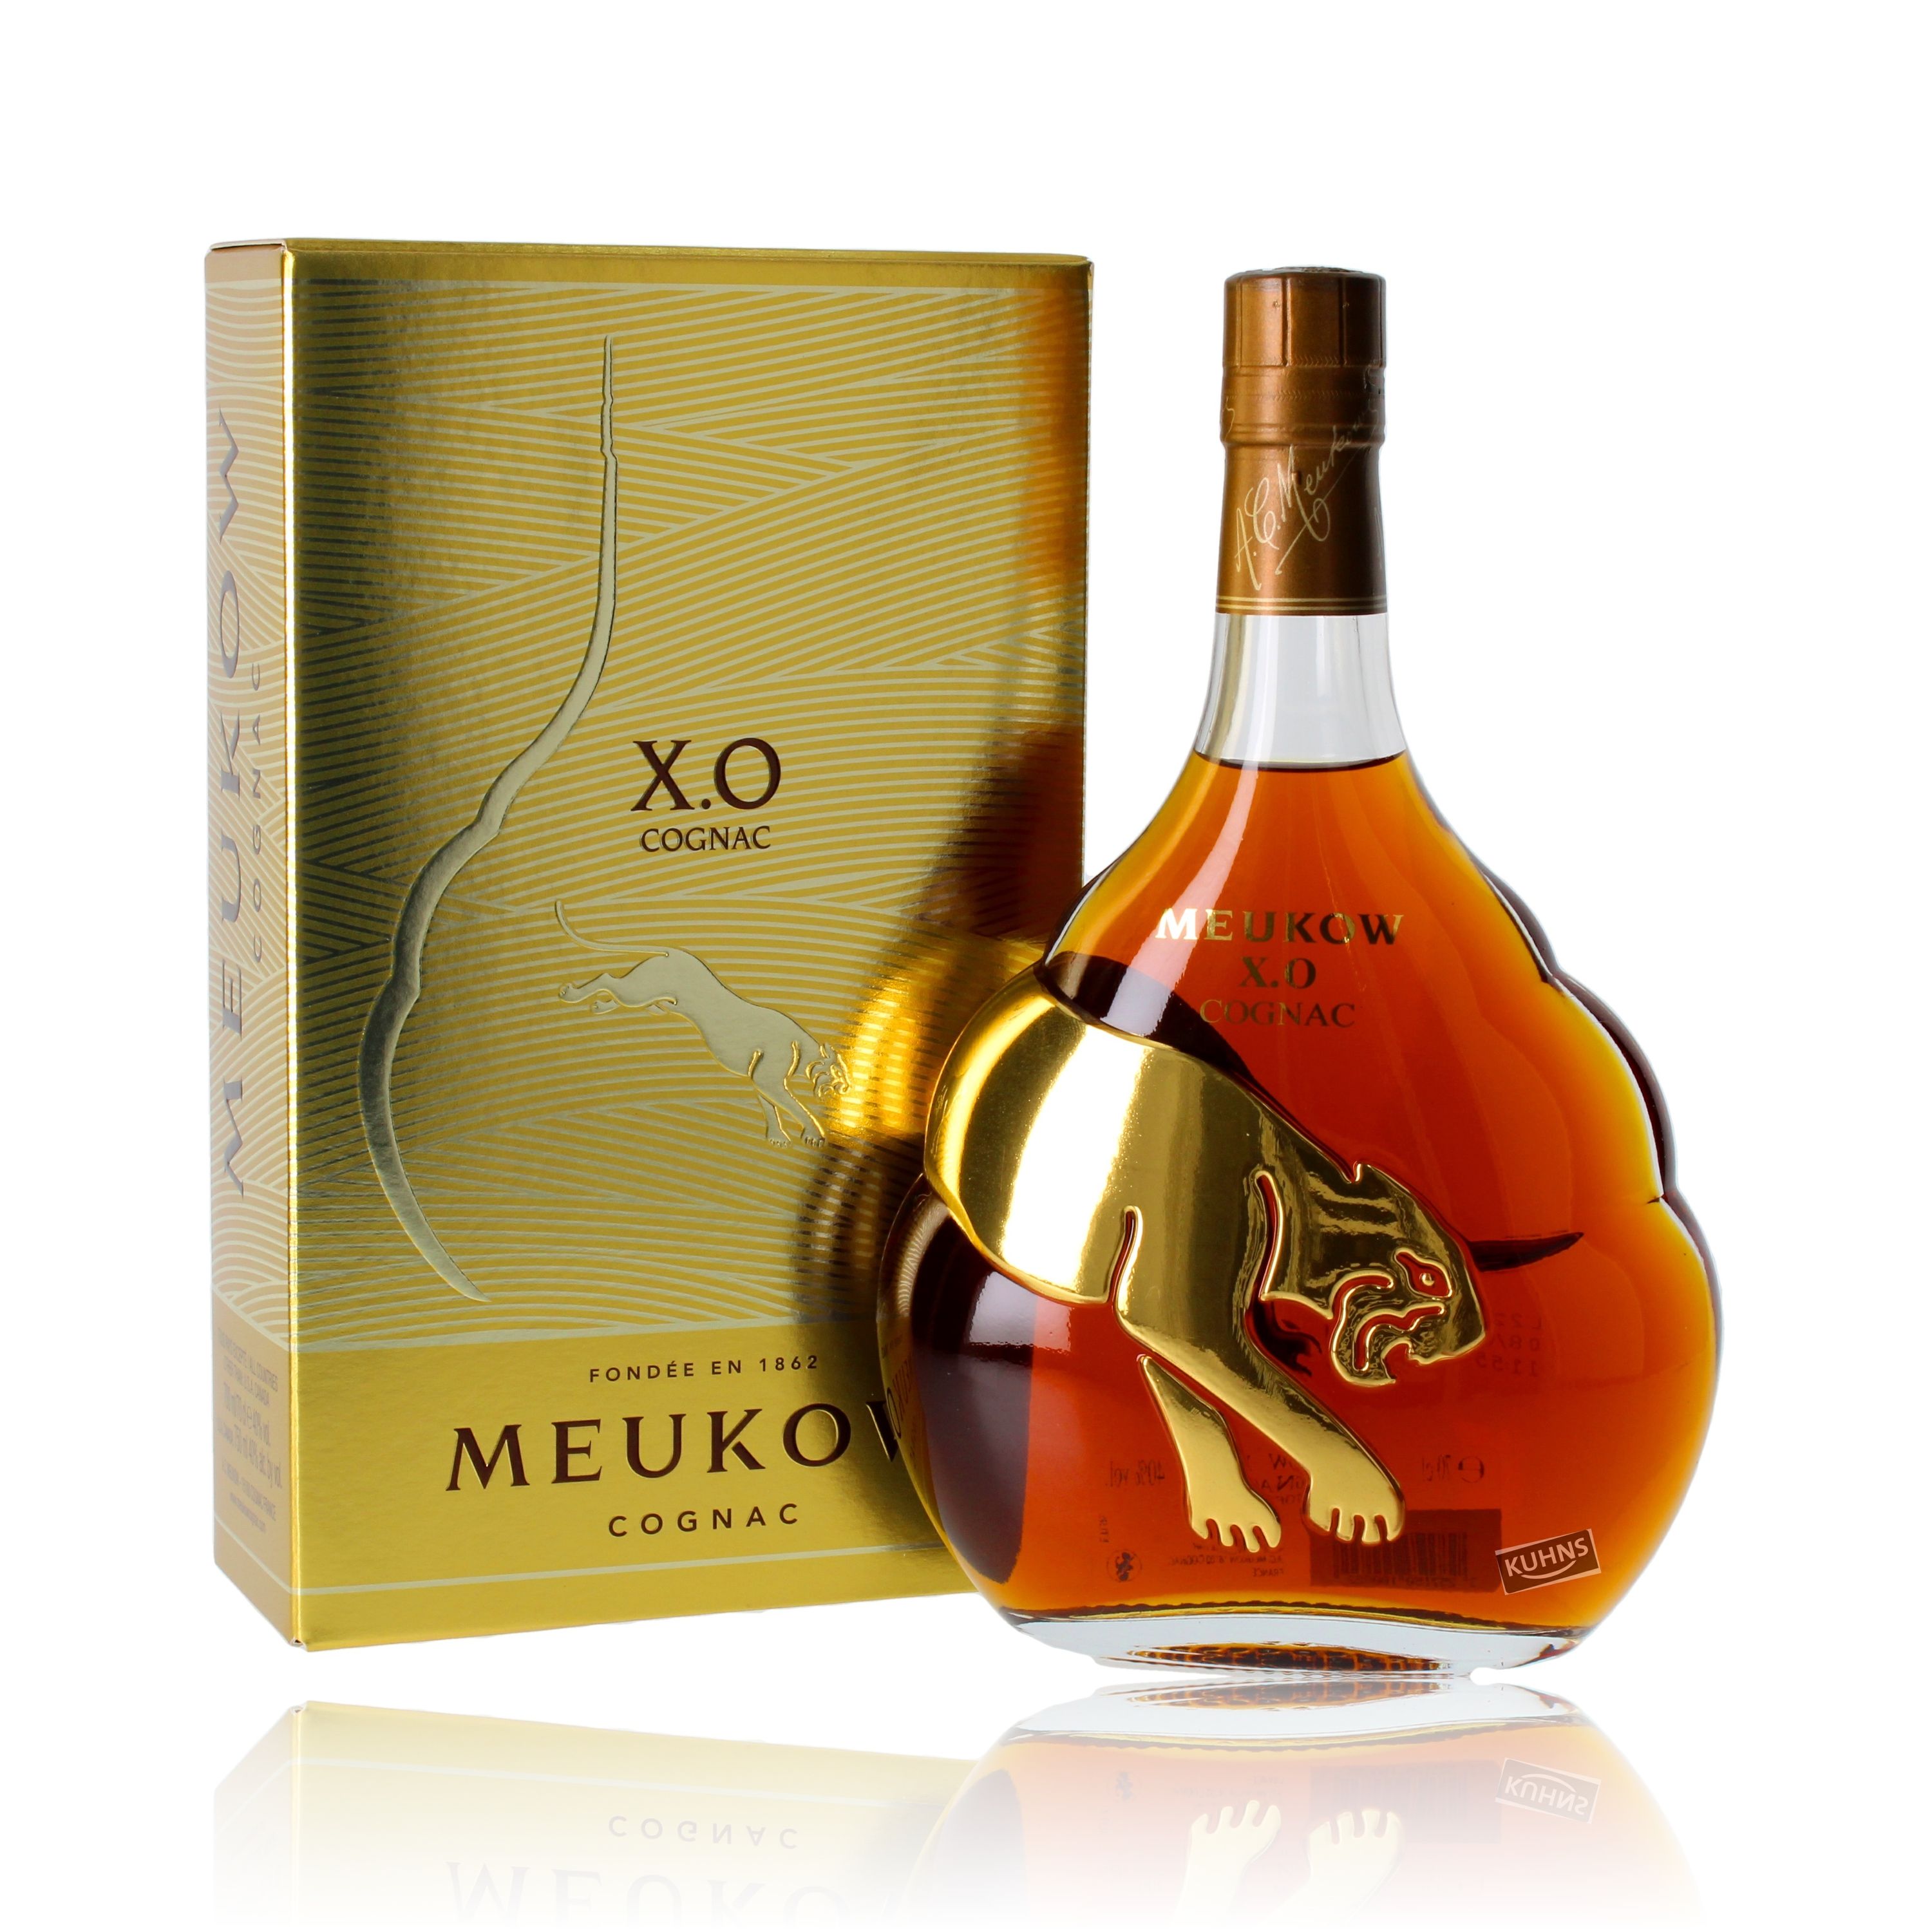 Meukow XO Cognac 0,7l, alk. 40 tilavuusprosenttia, Cognac France 